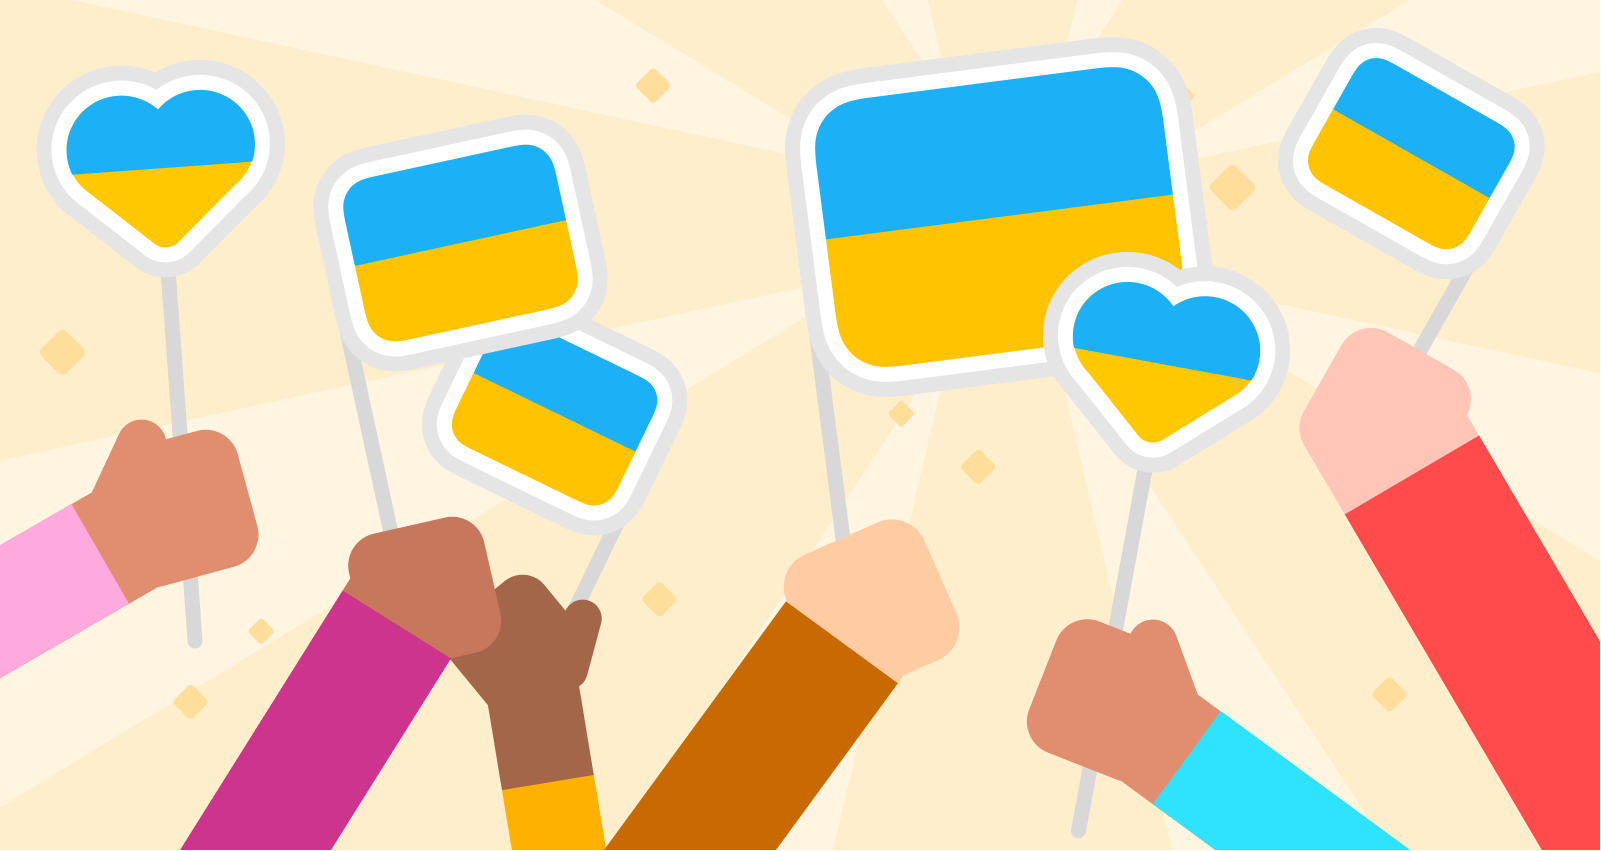 Ilustração de seis mãos segurando seis bandeiras da Ucrânia. Algumas são retângulos típicos e outras são corações. As mãos têm uma variedade de tons de pele e as mangas das roupas têm cores diferentes. Há um leve padrão de raios de sol e pontos cintilantes vindo de trás das bandeiras.